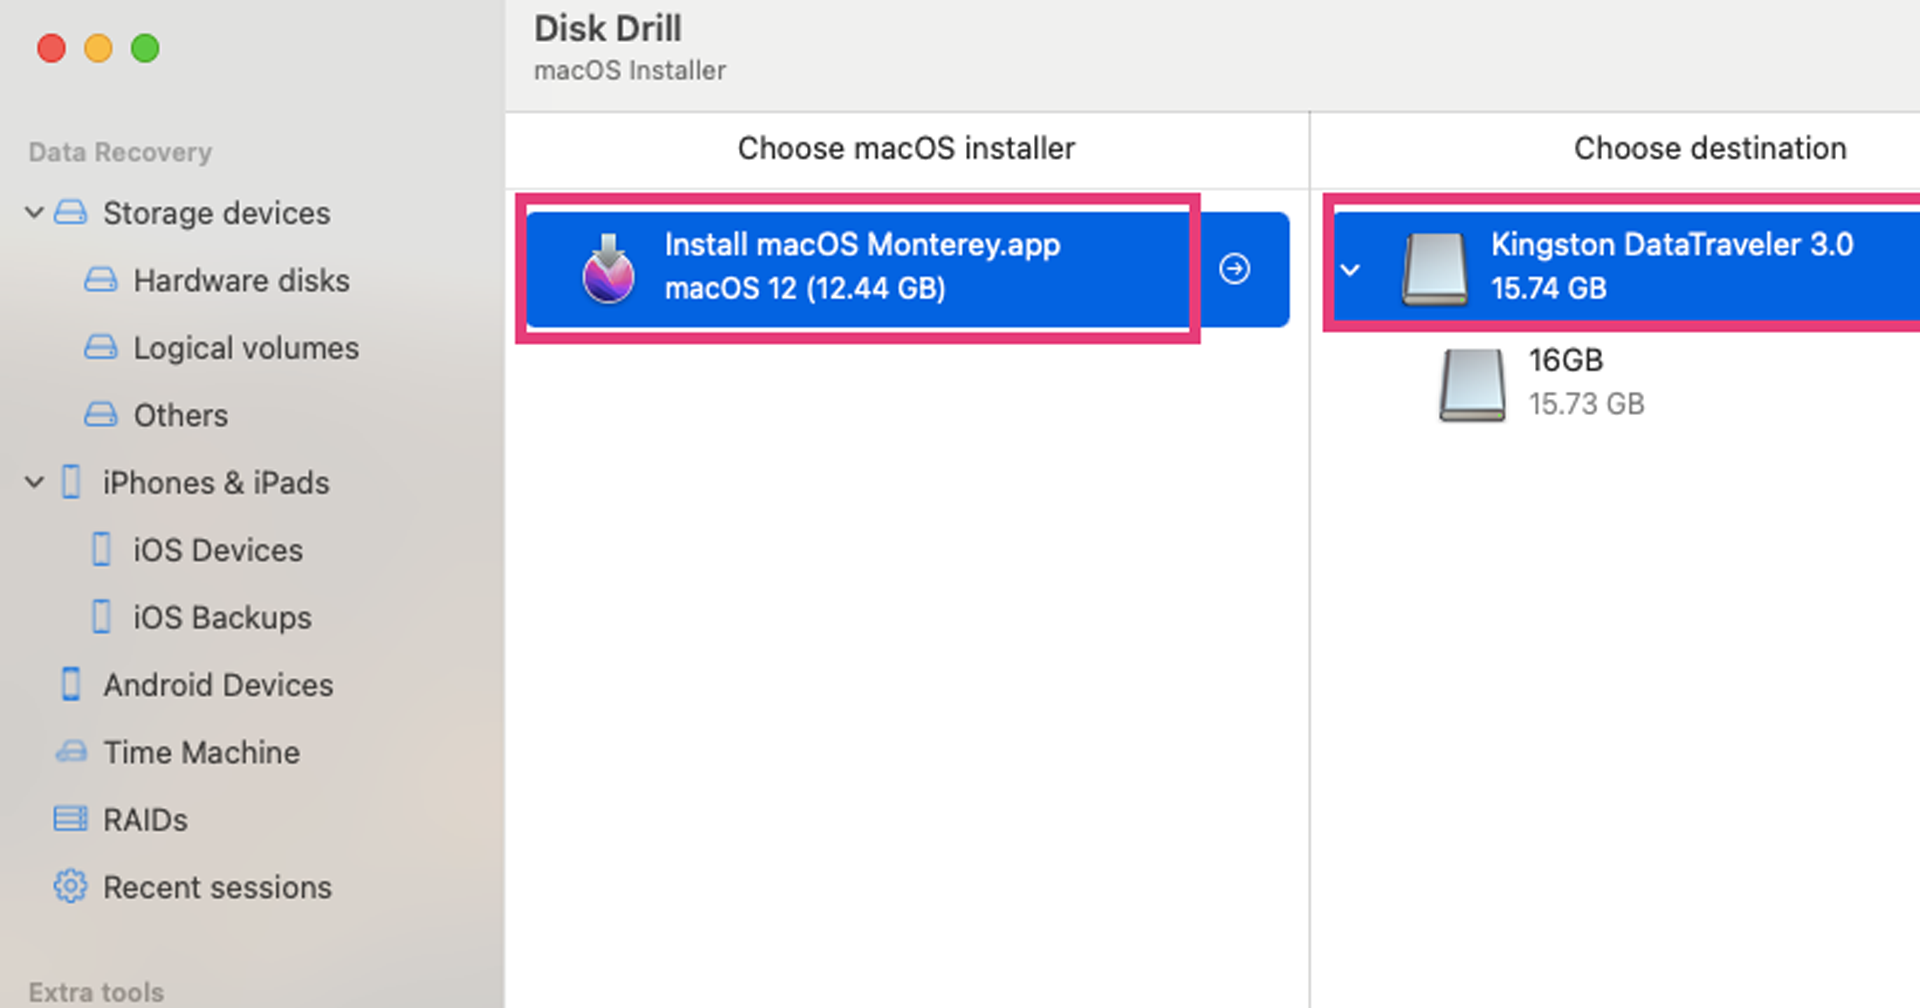 สร้าง Flashdrive ติดตั้ง macOS บนเครื่อง Mac แบบง่ายมาก ๆ ด้วยโปรแกรม Disk Drill